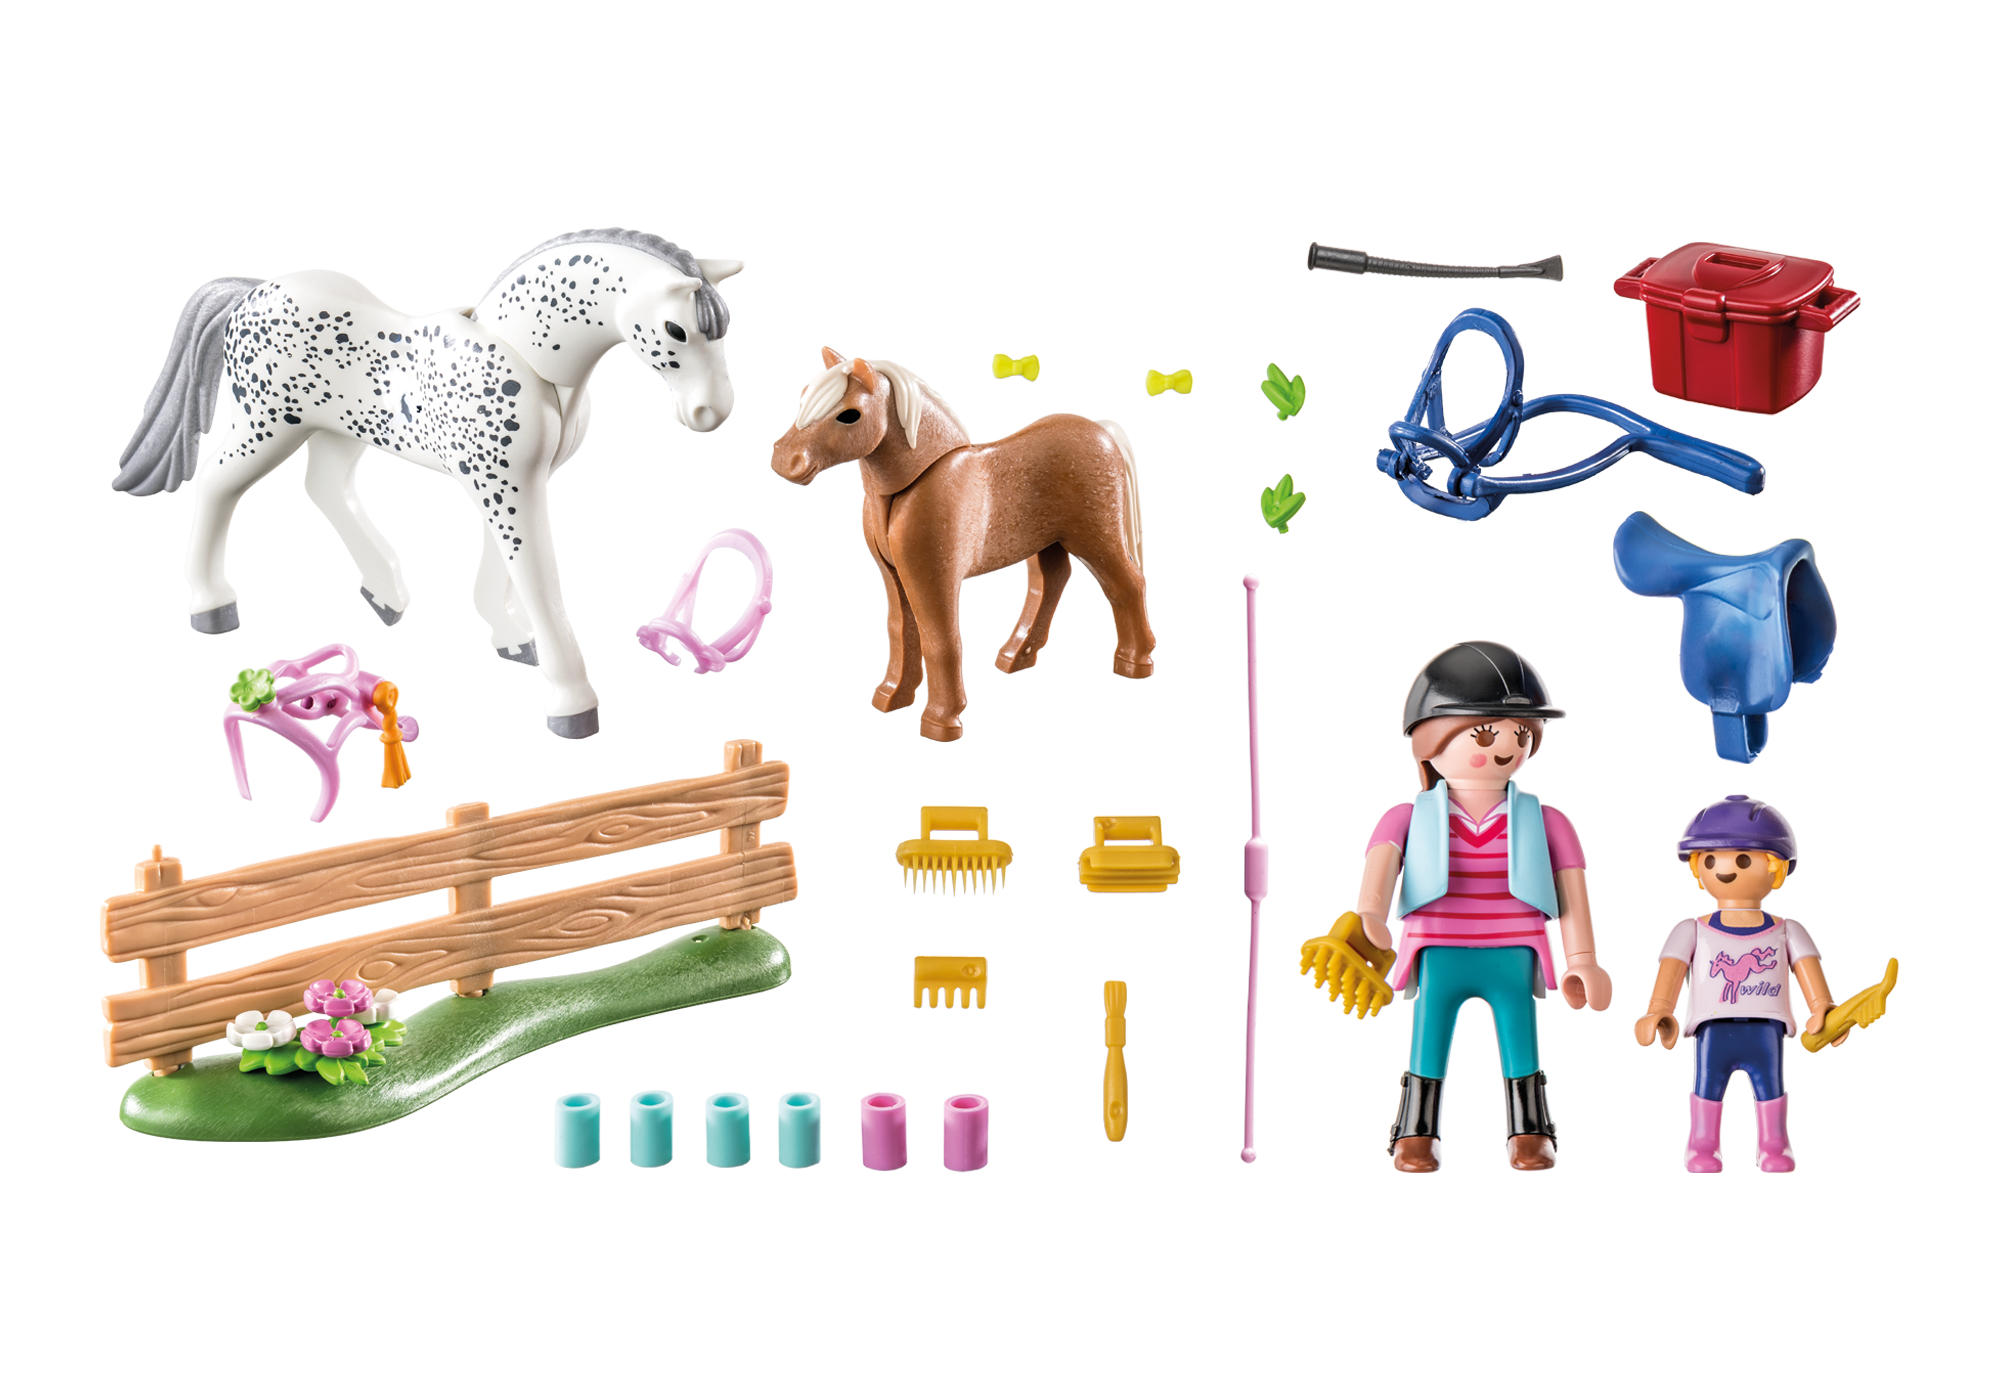 Playmobil - Cavalière avec cheval